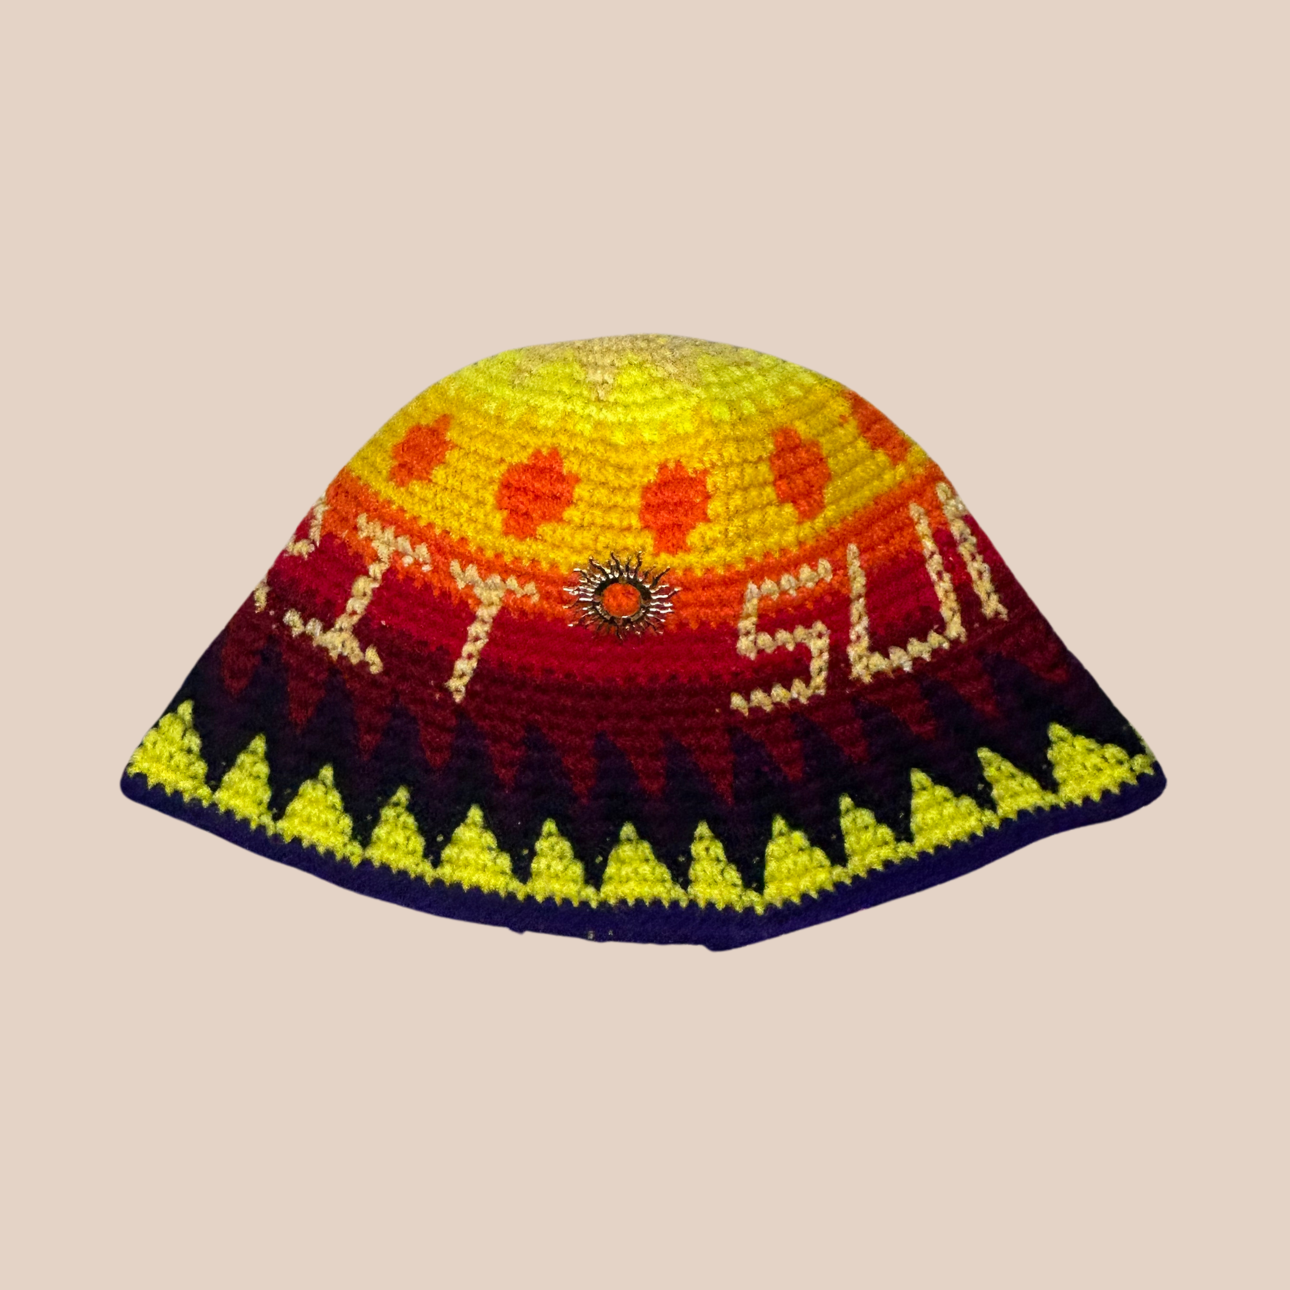 Un bucket hat crocheté en laine et acrylique, arborant des couleurs vives et audacieuses, décoration soleil cousue main, texte sun et spirit